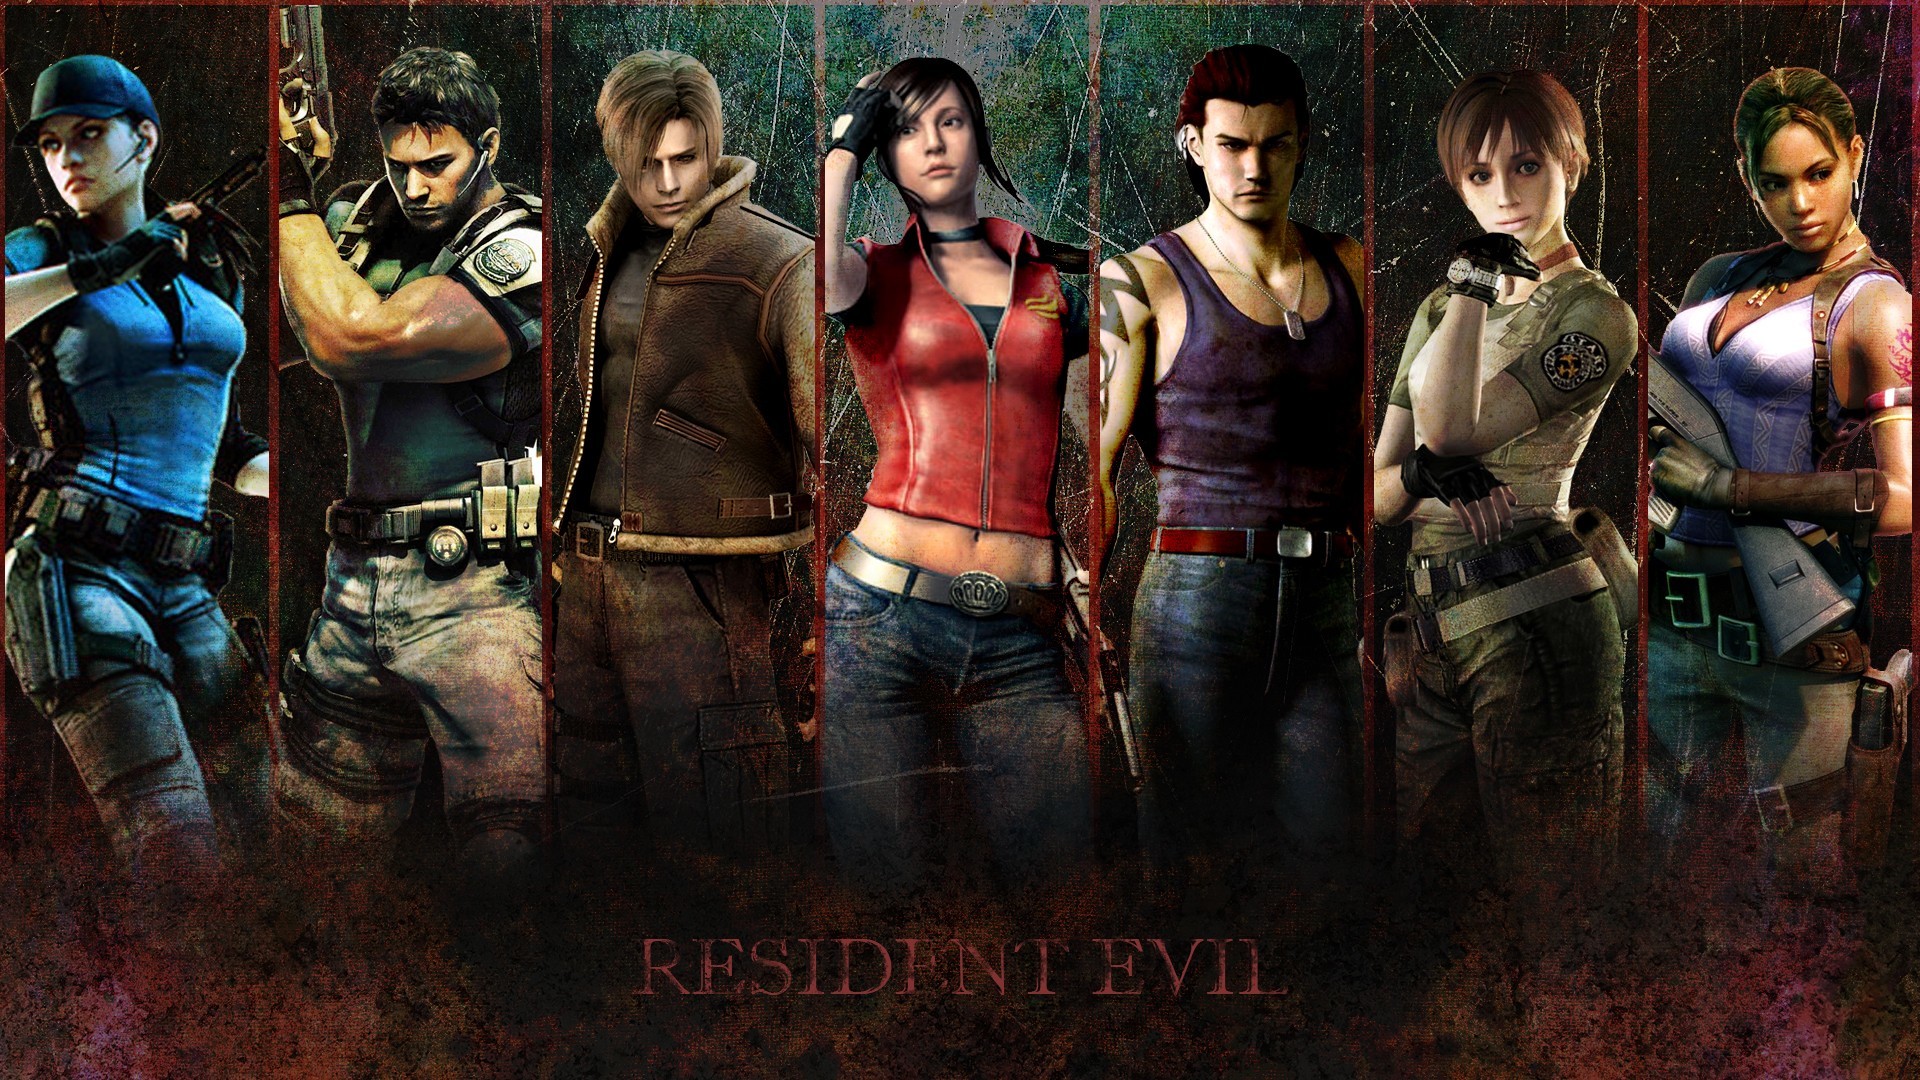 Resident Evil Revelations Jill Valentine wallpaper, 1920x1200, 120095